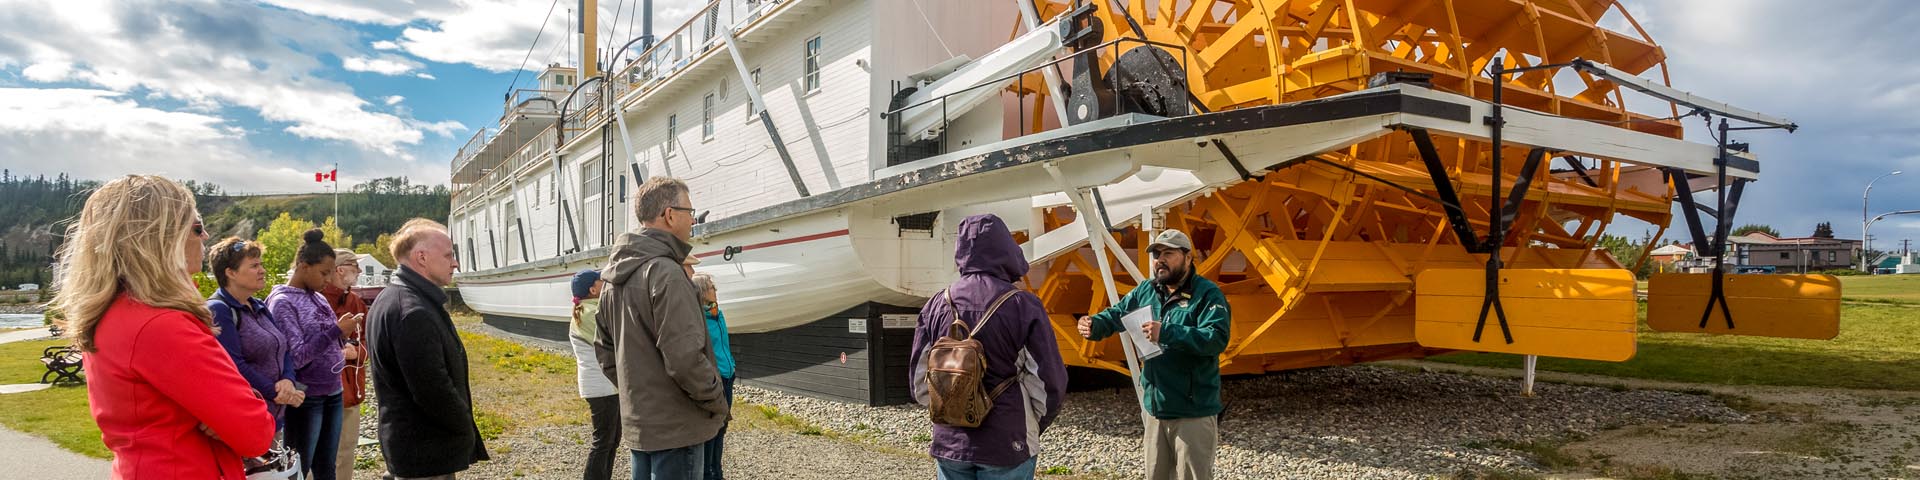 Un guide de Parcs Canada avec des visiteurs à côté du bateau au lieu historique national S.S. Klondike.